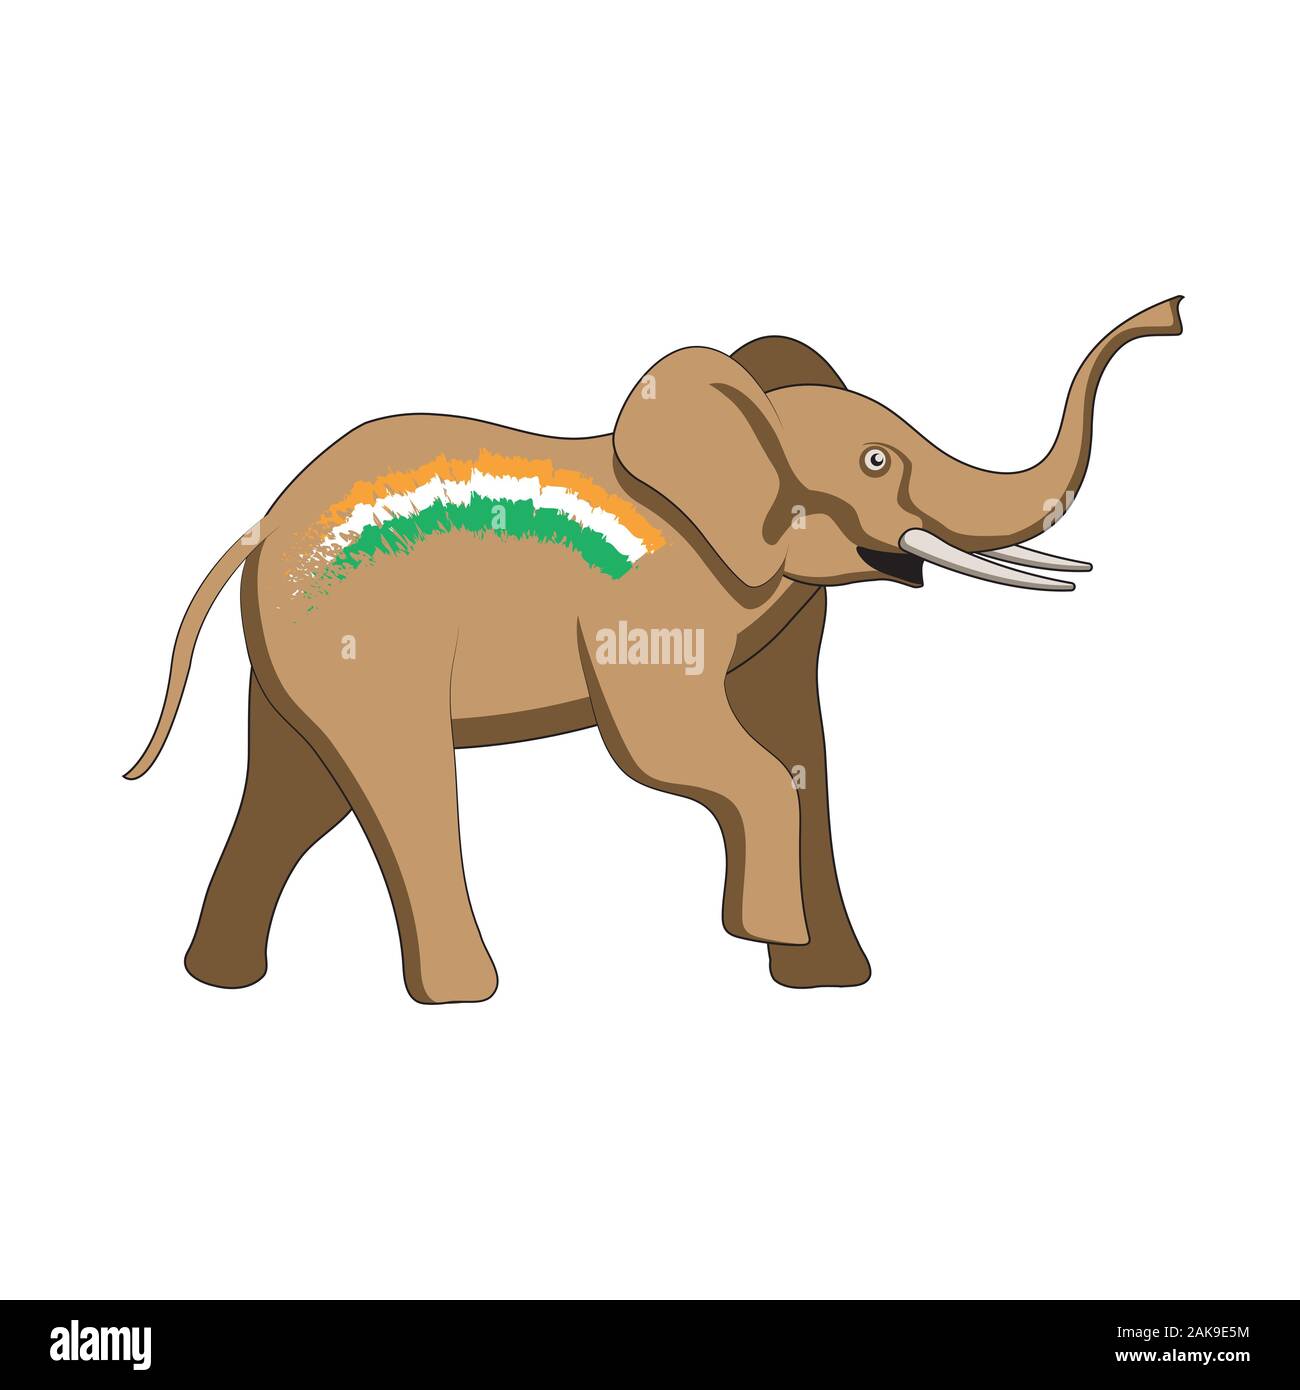 Elefante animale con la bandiera di India isolato su un fondo bianco. Immagine vettoriale Illustrazione Vettoriale